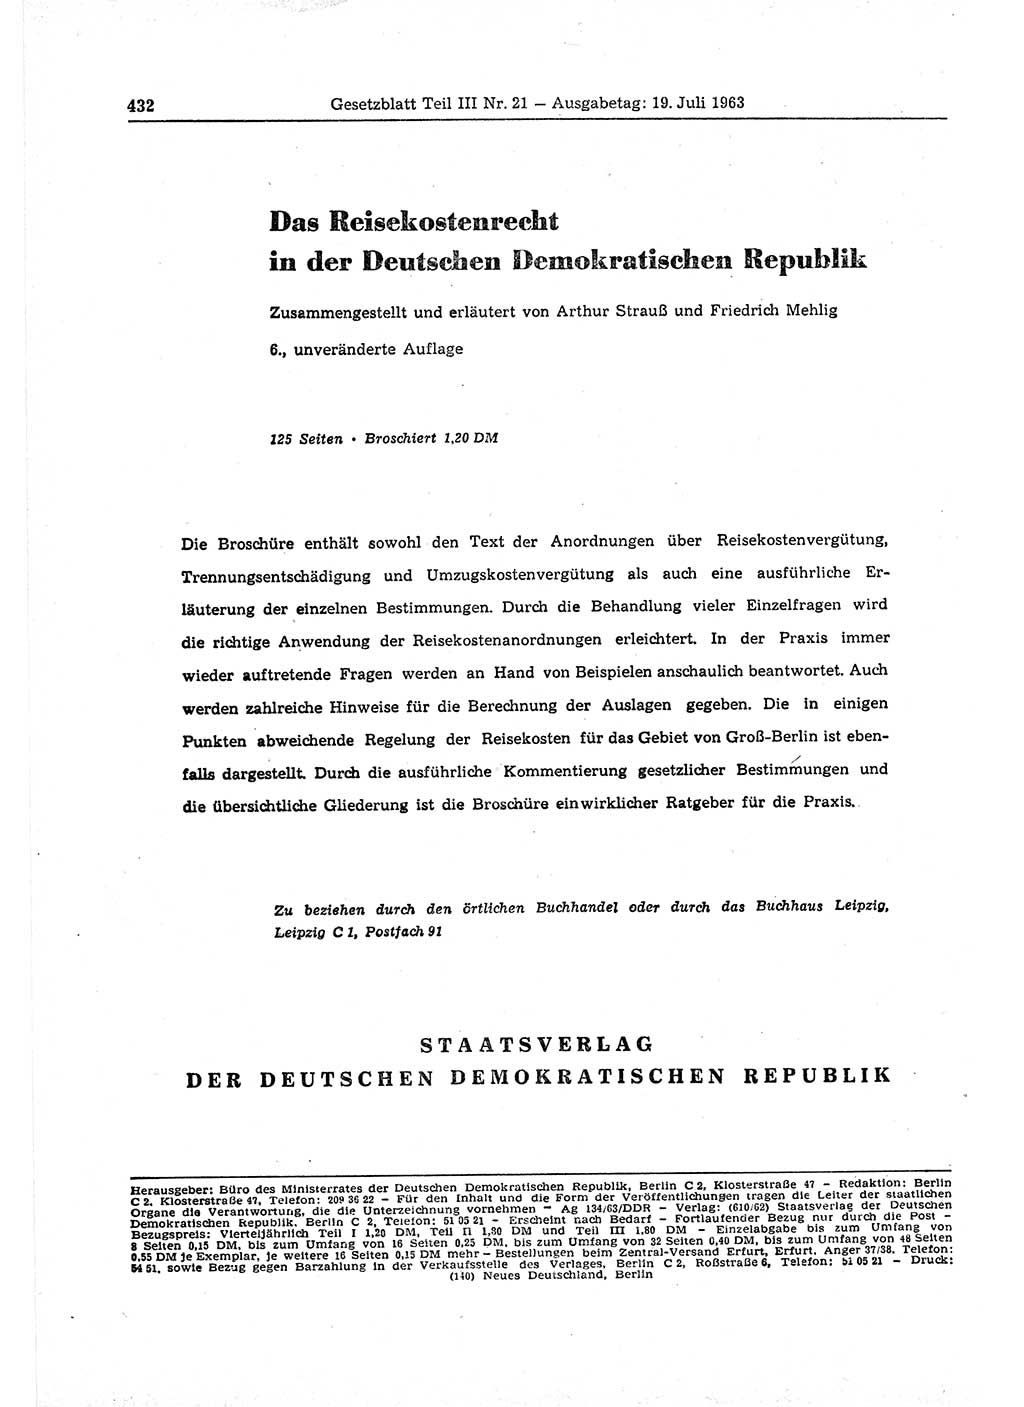 Gesetzblatt (GBl.) der Deutschen Demokratischen Republik (DDR) Teil ⅠⅠⅠ 1963, Seite 432 (GBl. DDR ⅠⅠⅠ 1963, S. 432)